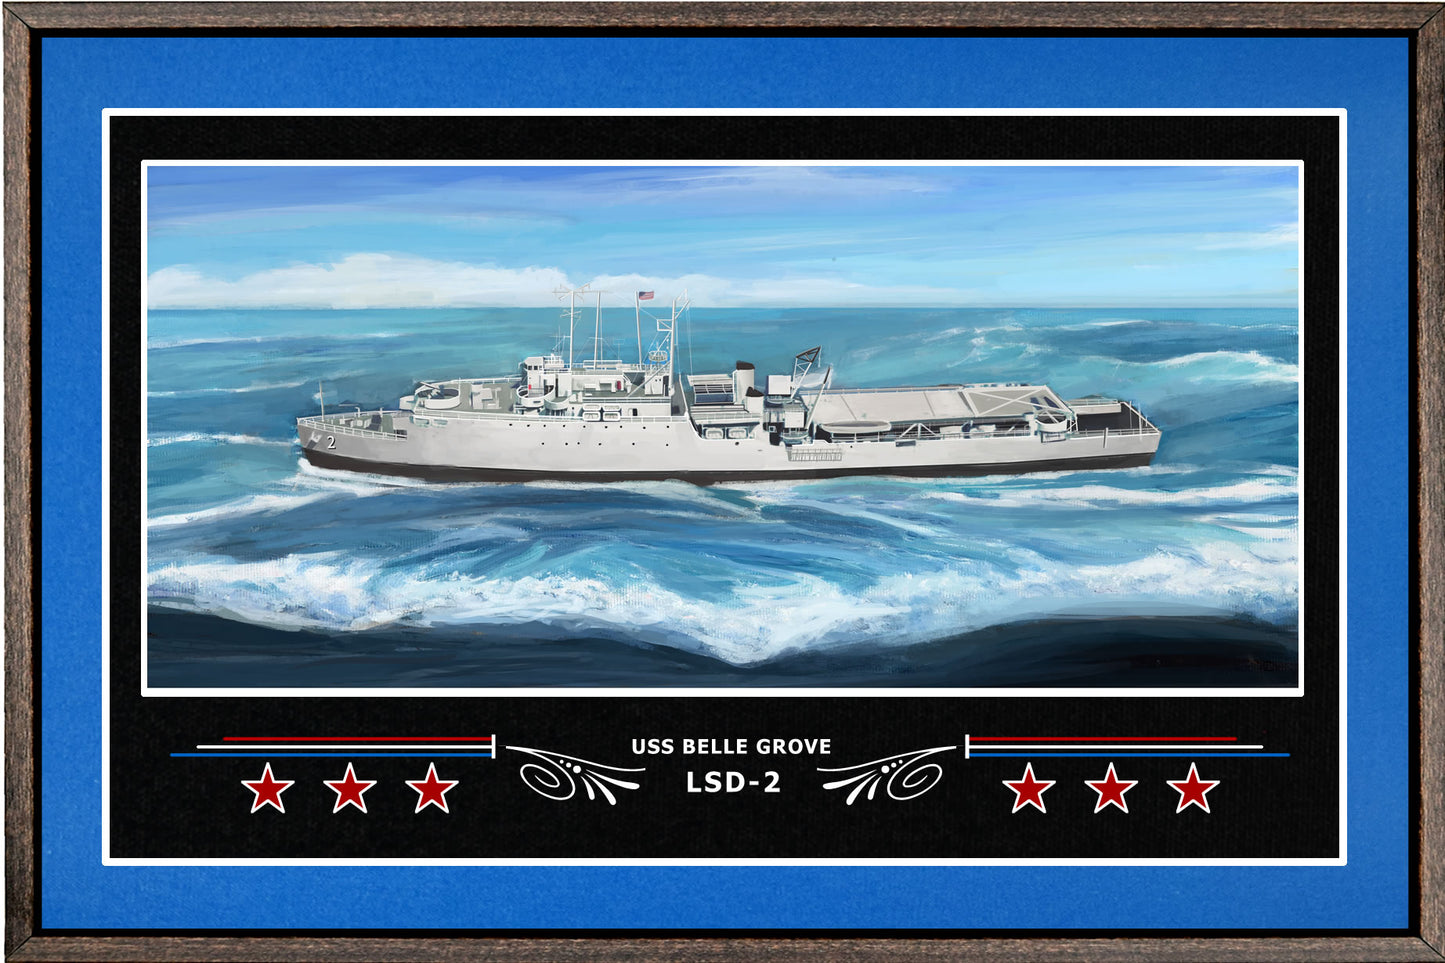 USS BELLE GROVE LSD 2 BOX FRAMED CANVAS ART BLUE